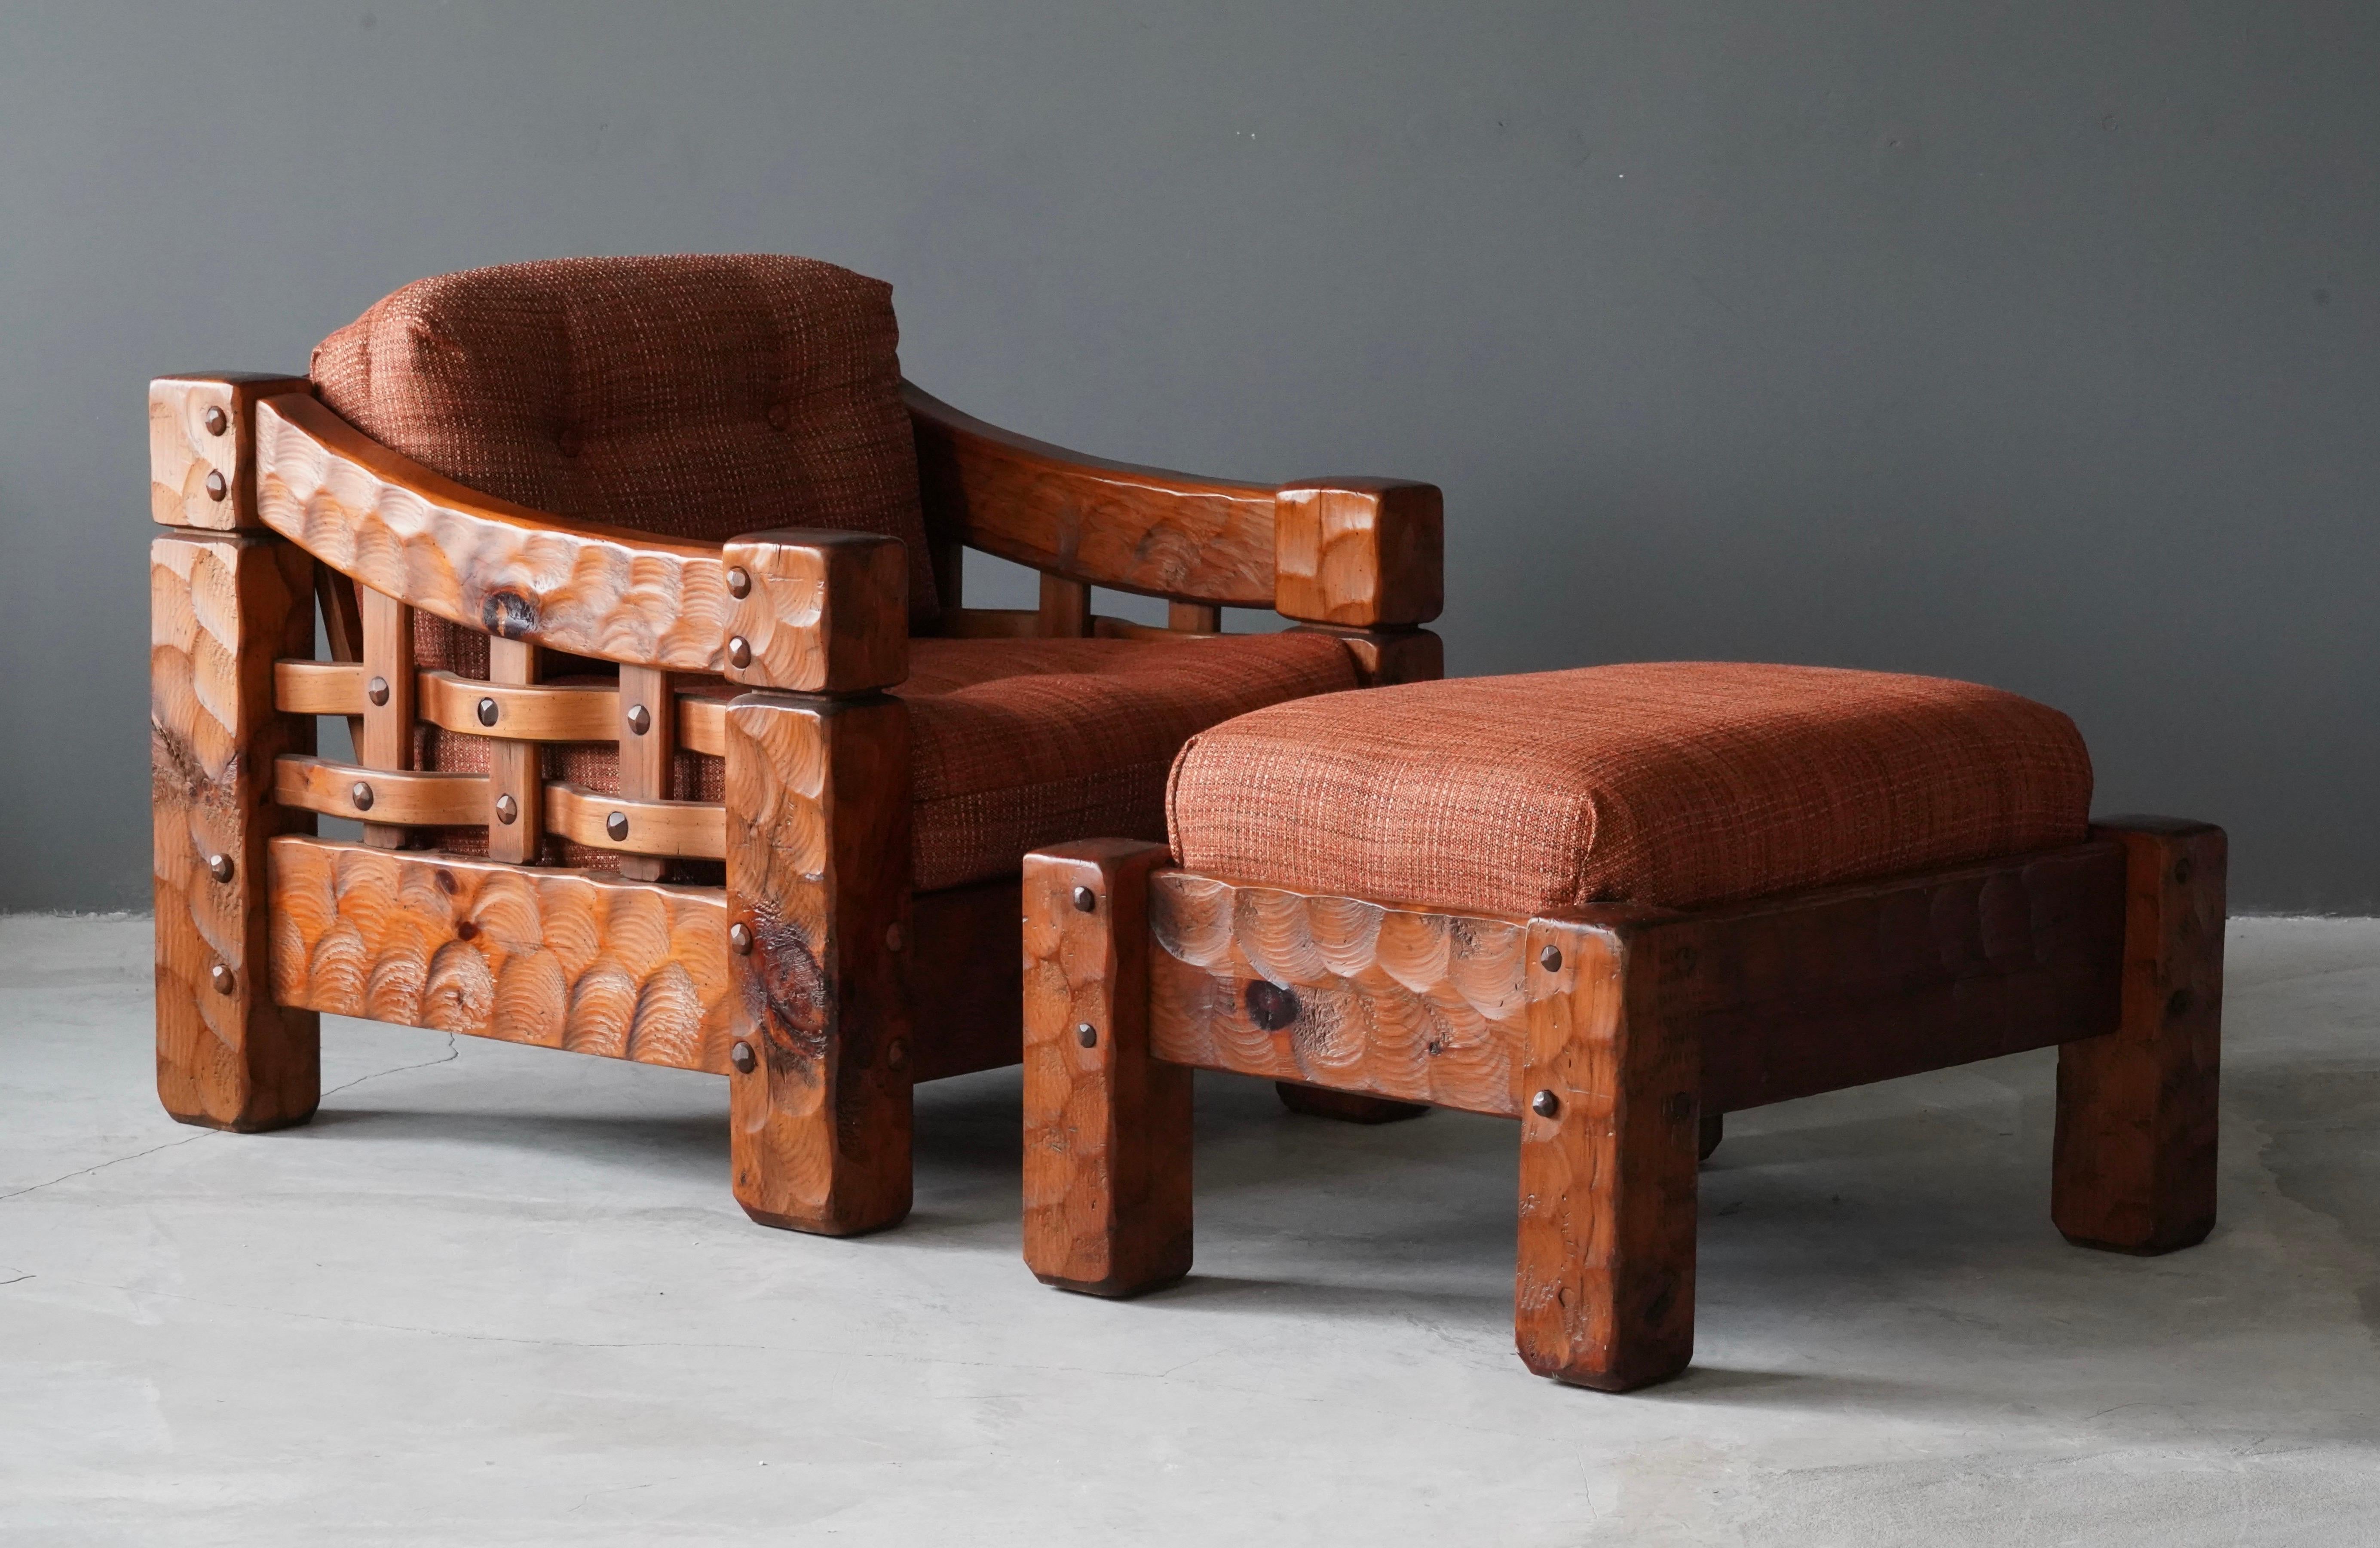 Une paire de chaises longues de grande taille avec ottoman. En pin massif sculpté avec une menuiserie révélée. Coussins rembourrés en tissu rouge/orange d'origine. 

La grande taille de l'ottoman des chaises et le matériau des coussins rendent les